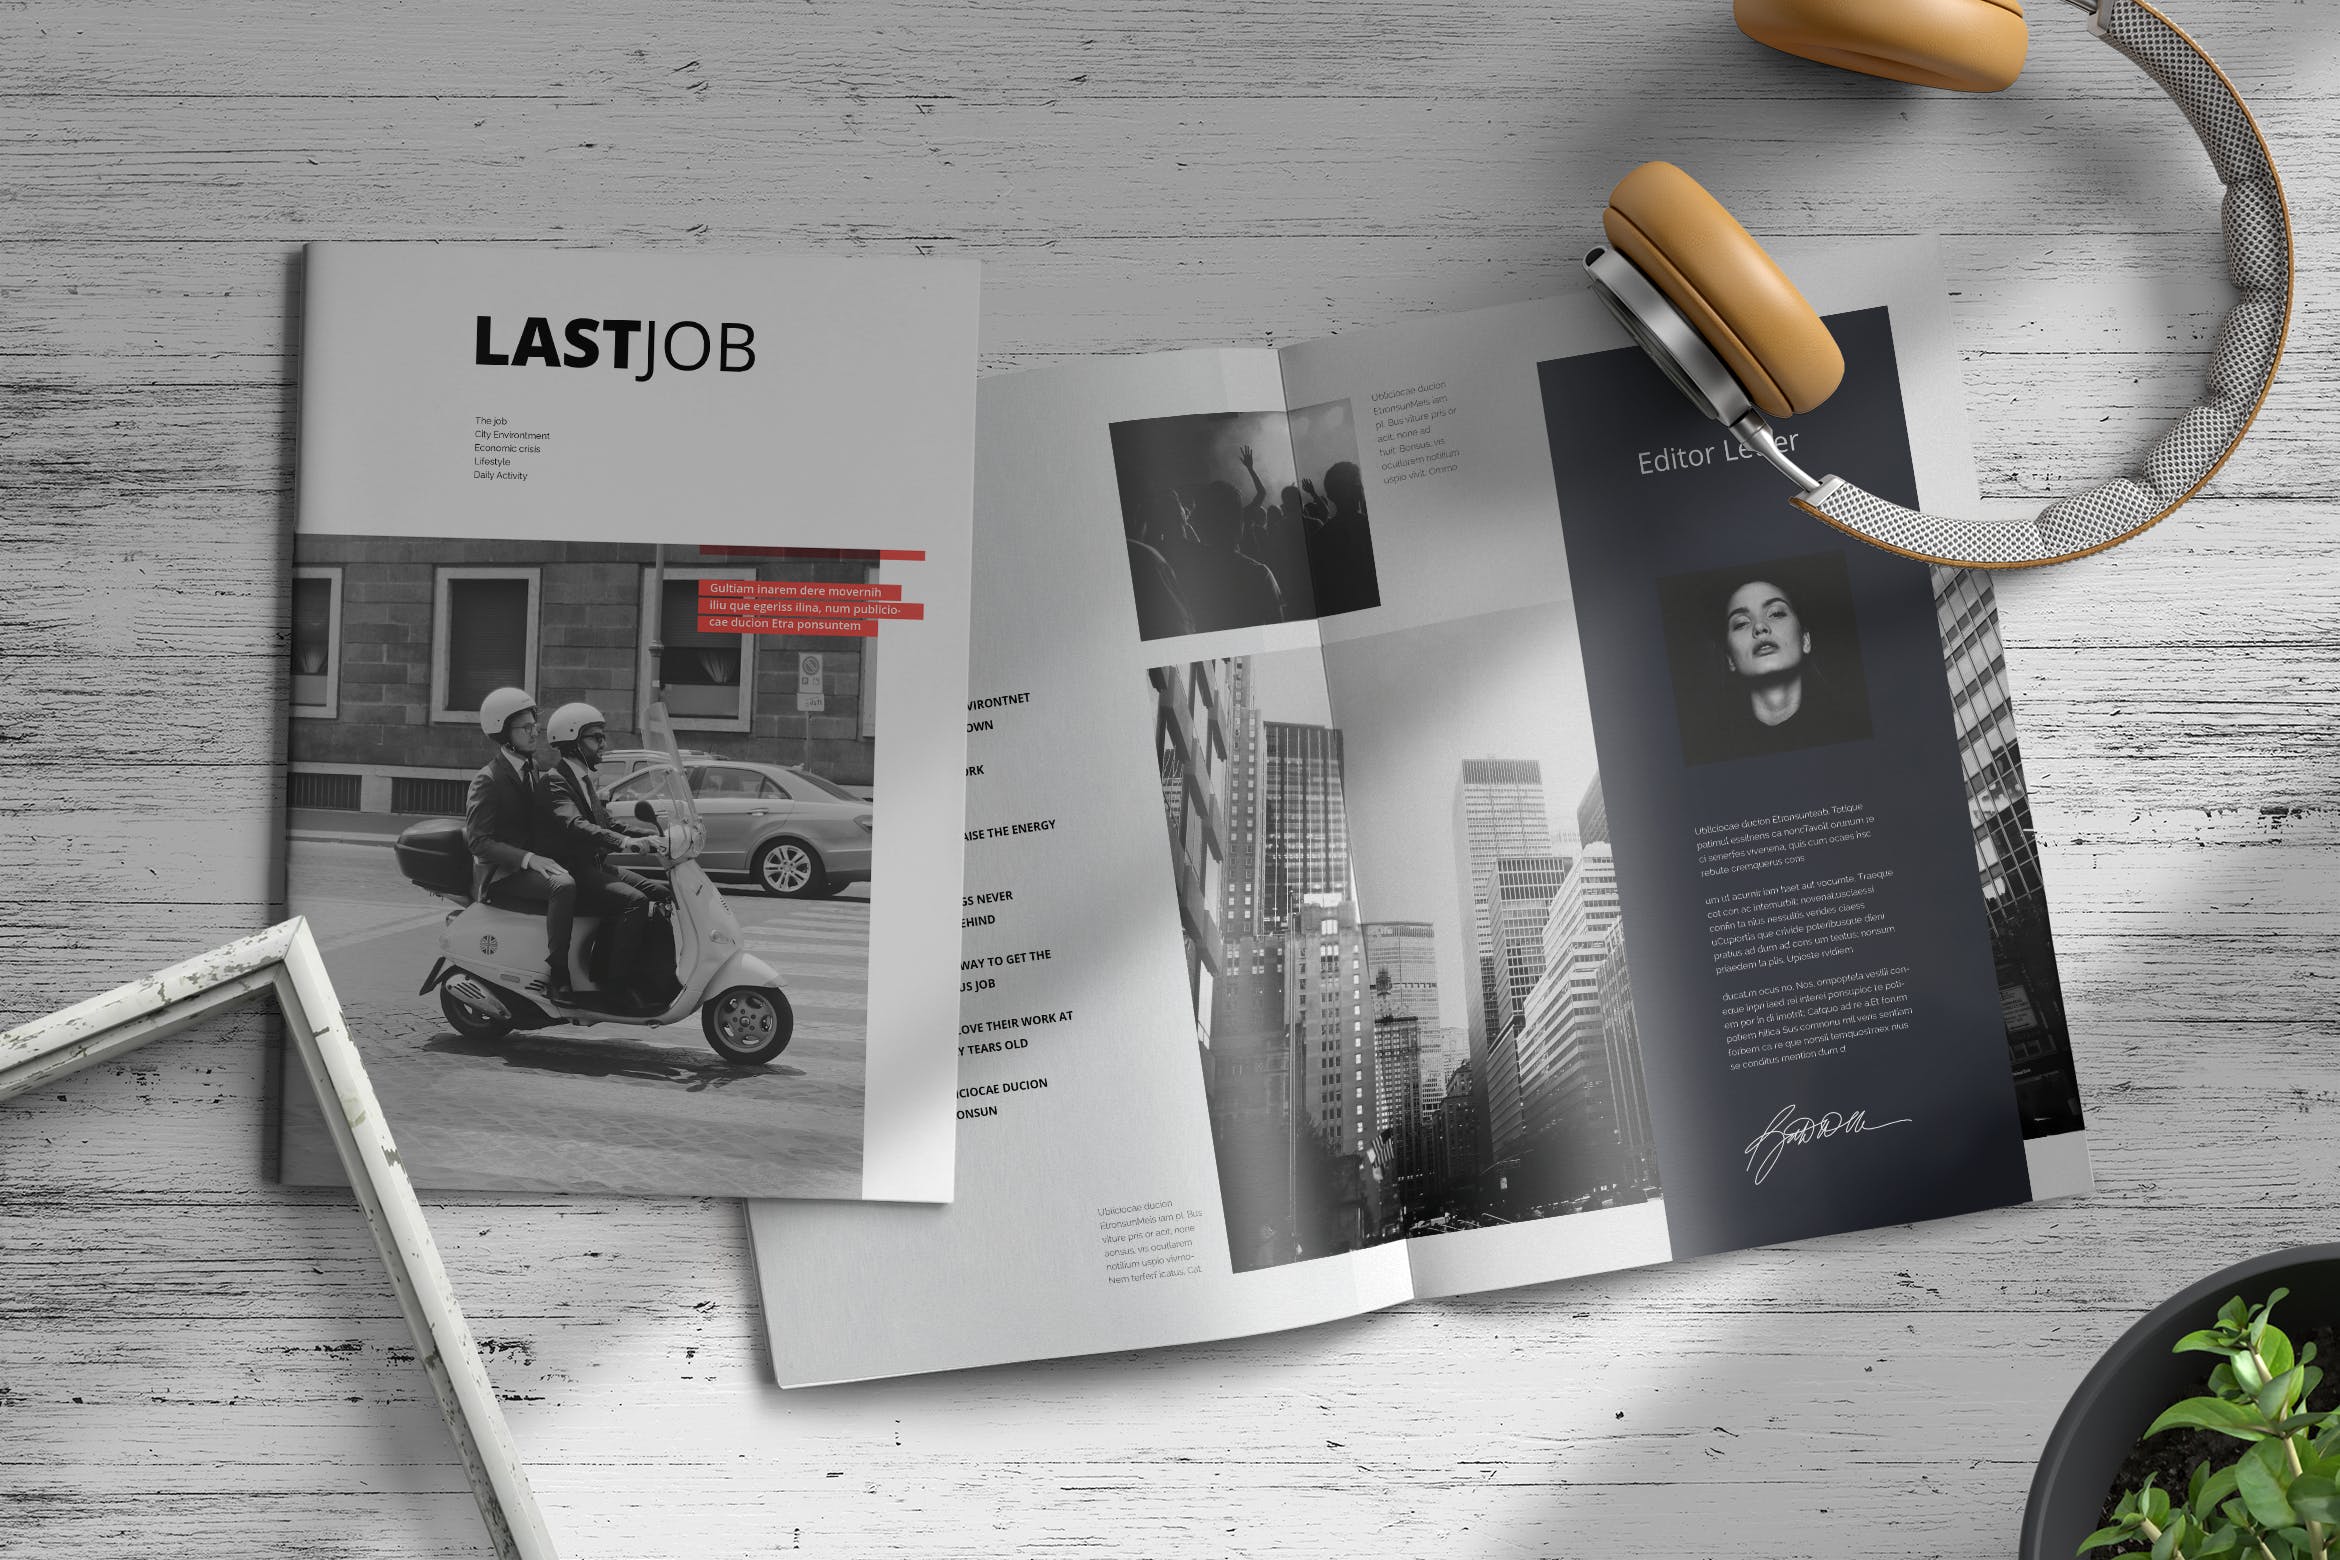 职场/人力资源主题大洋岛精选杂志排版设计模板 Lastjob | Magazine Template插图